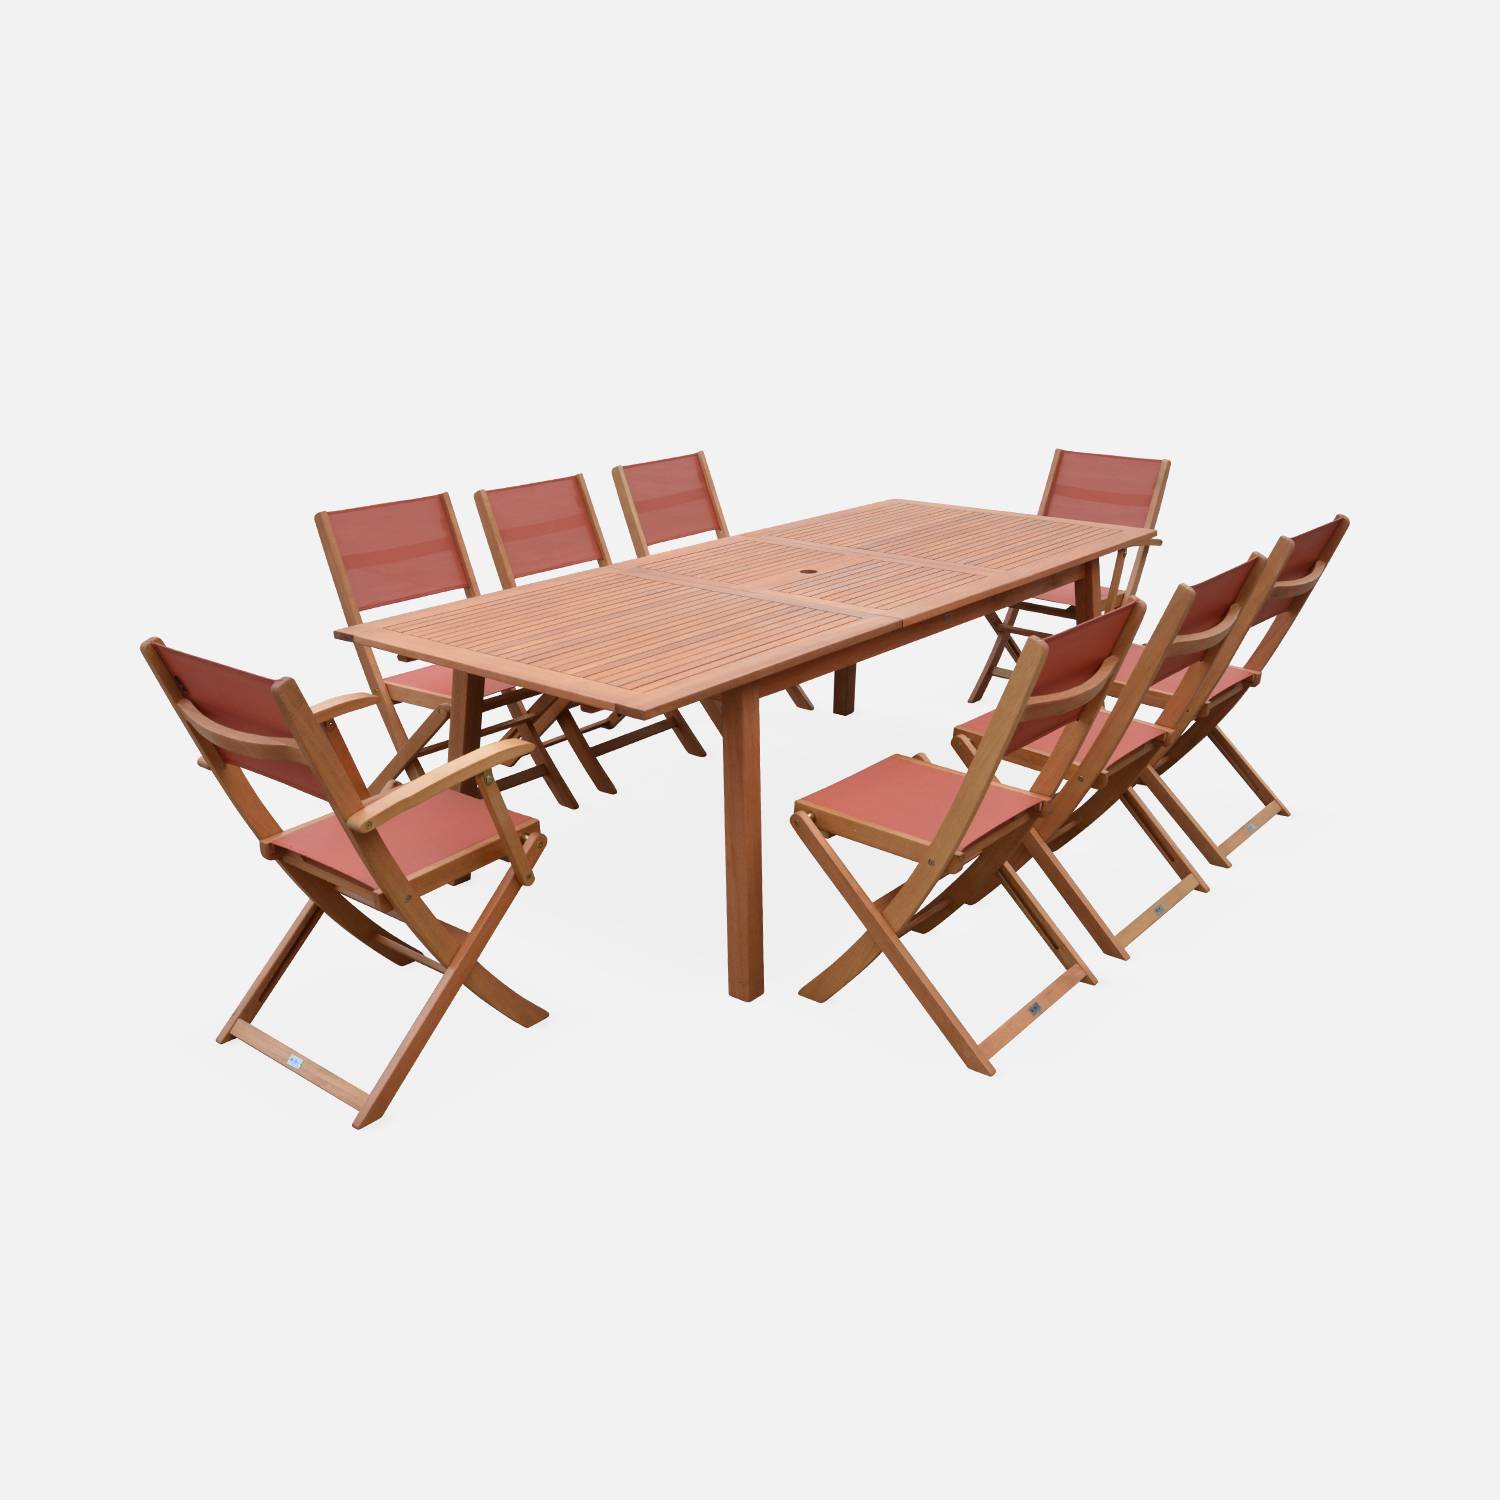 Ausziehbare Gartenmöbel aus Holz - Almeria - Tisch 180/240 cm mit Verlängerung, 2 Sesseln und 6 Stühlen aus geöltem FSC-Eukalyptusholz und terrakottafarbenem Textilene Photo3